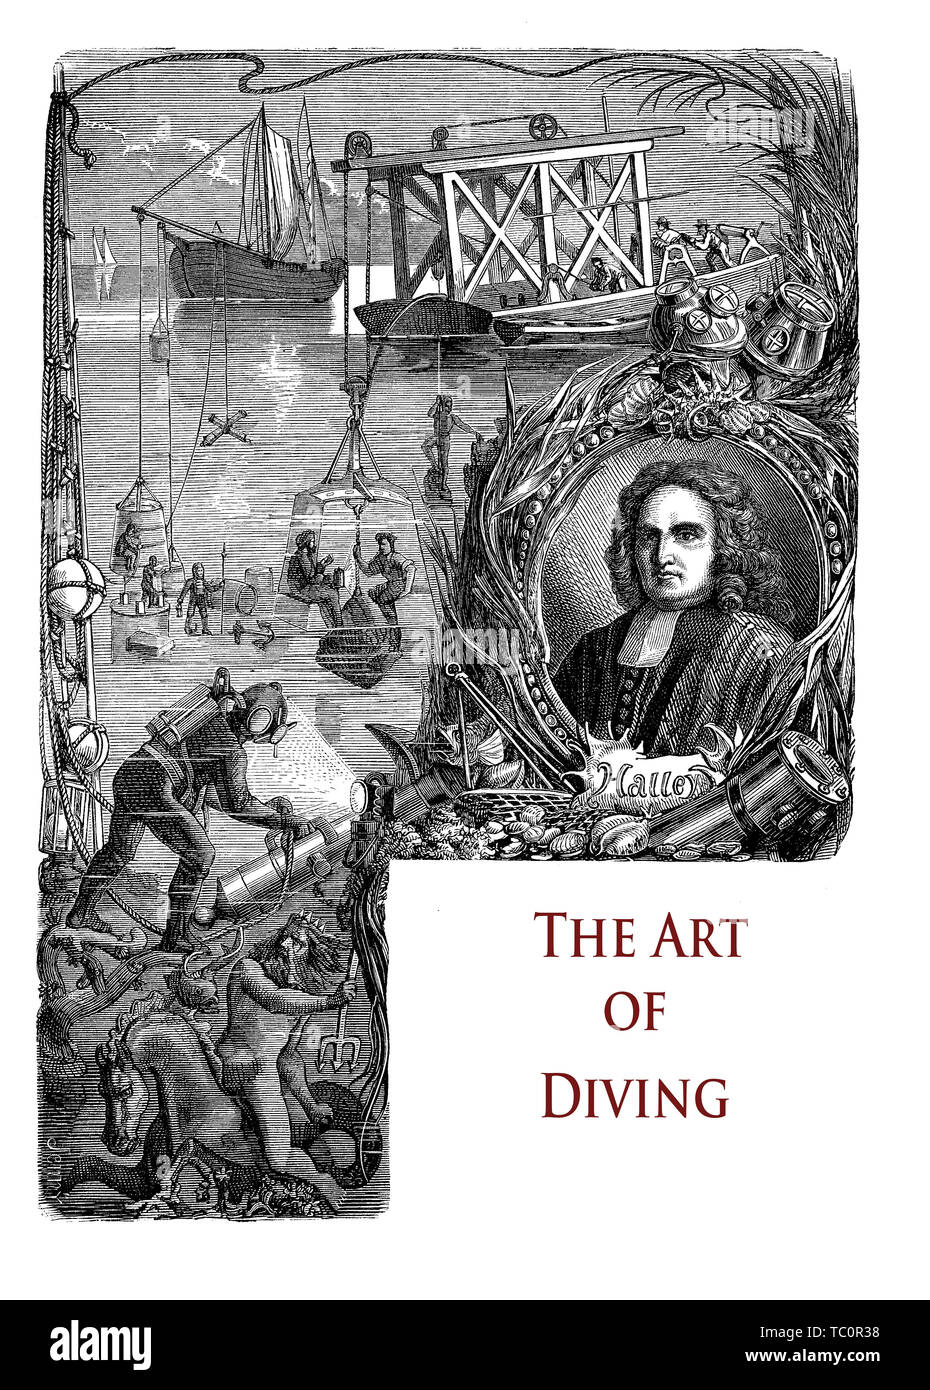 Frontispice de typographie pour un chapitre sur l'art de la plongée sous-marine avec le portrait d'Edmond Halley, l'astronome anglais inventeur de l'amélioration de scaphandre Banque D'Images